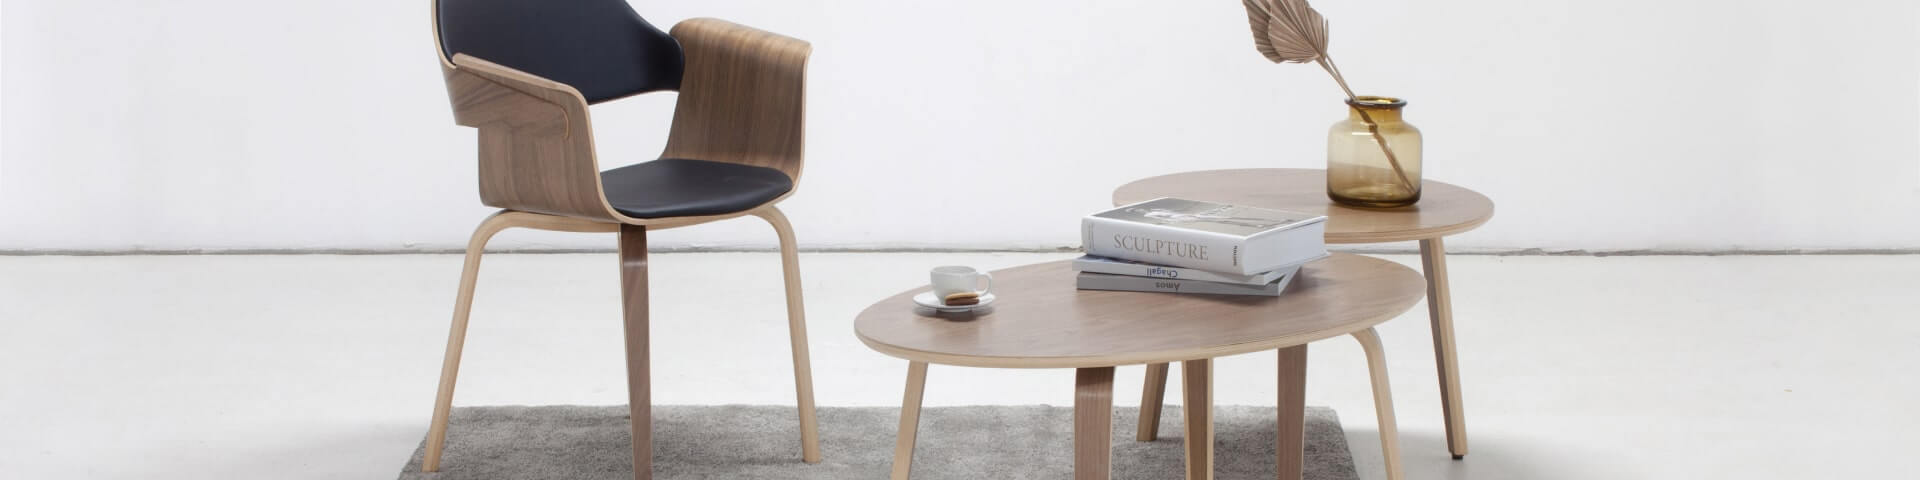 Egy skandináv diófa étkezőasztal hat székkel, amelyek stílusos és meghitt étkezőteret teremtenek.